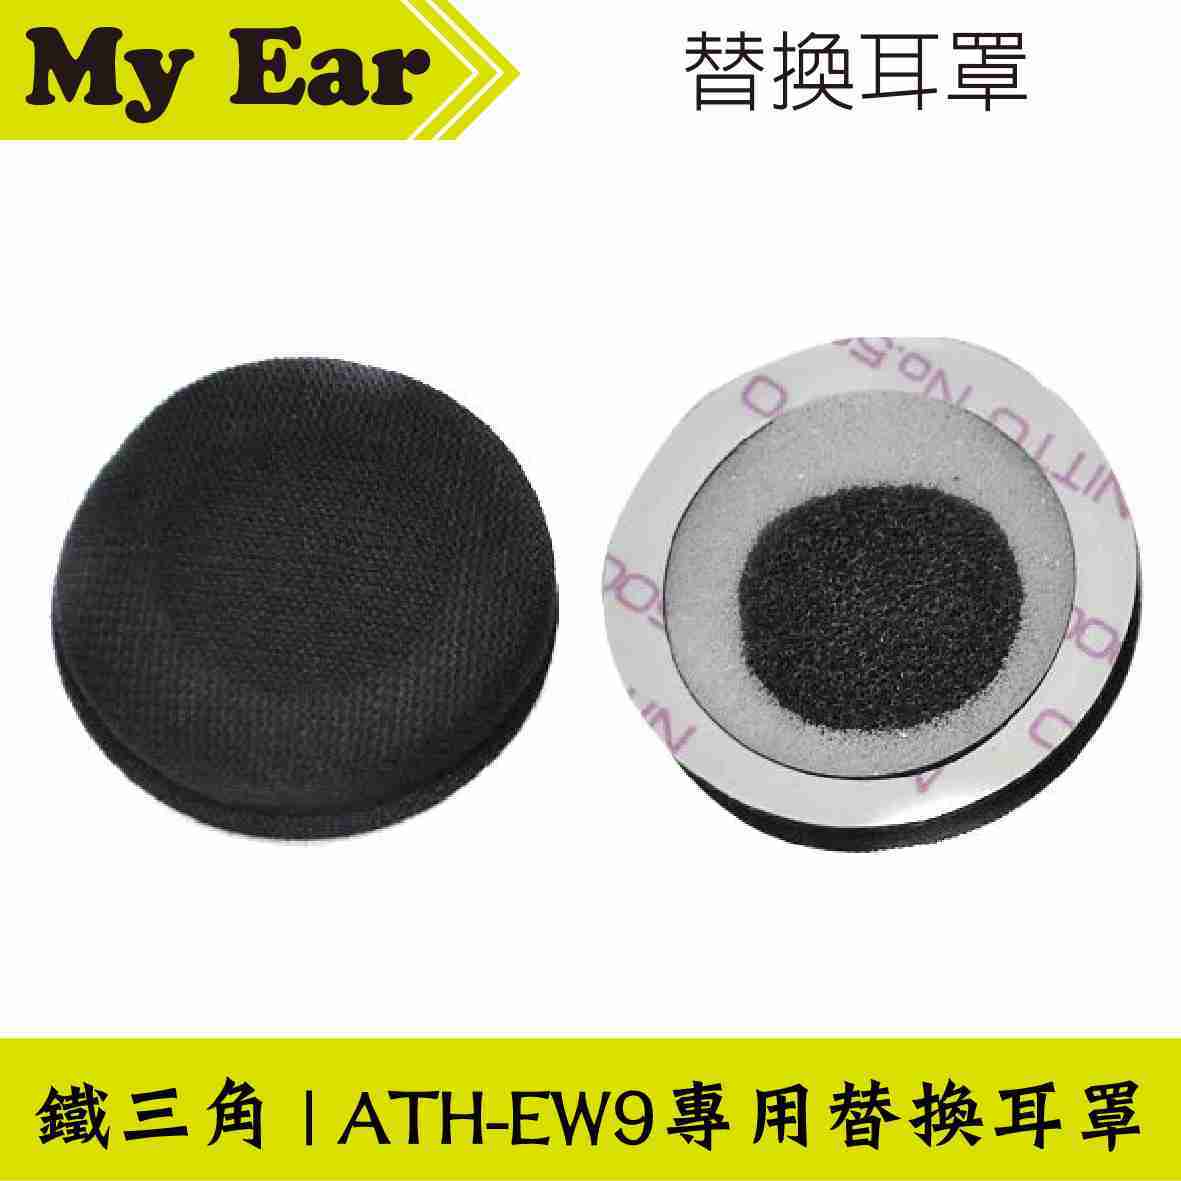 鐵三角 HP-EW9 ATH-EW9 專用 海綿 替換耳罩 | My Ear耳機專門店